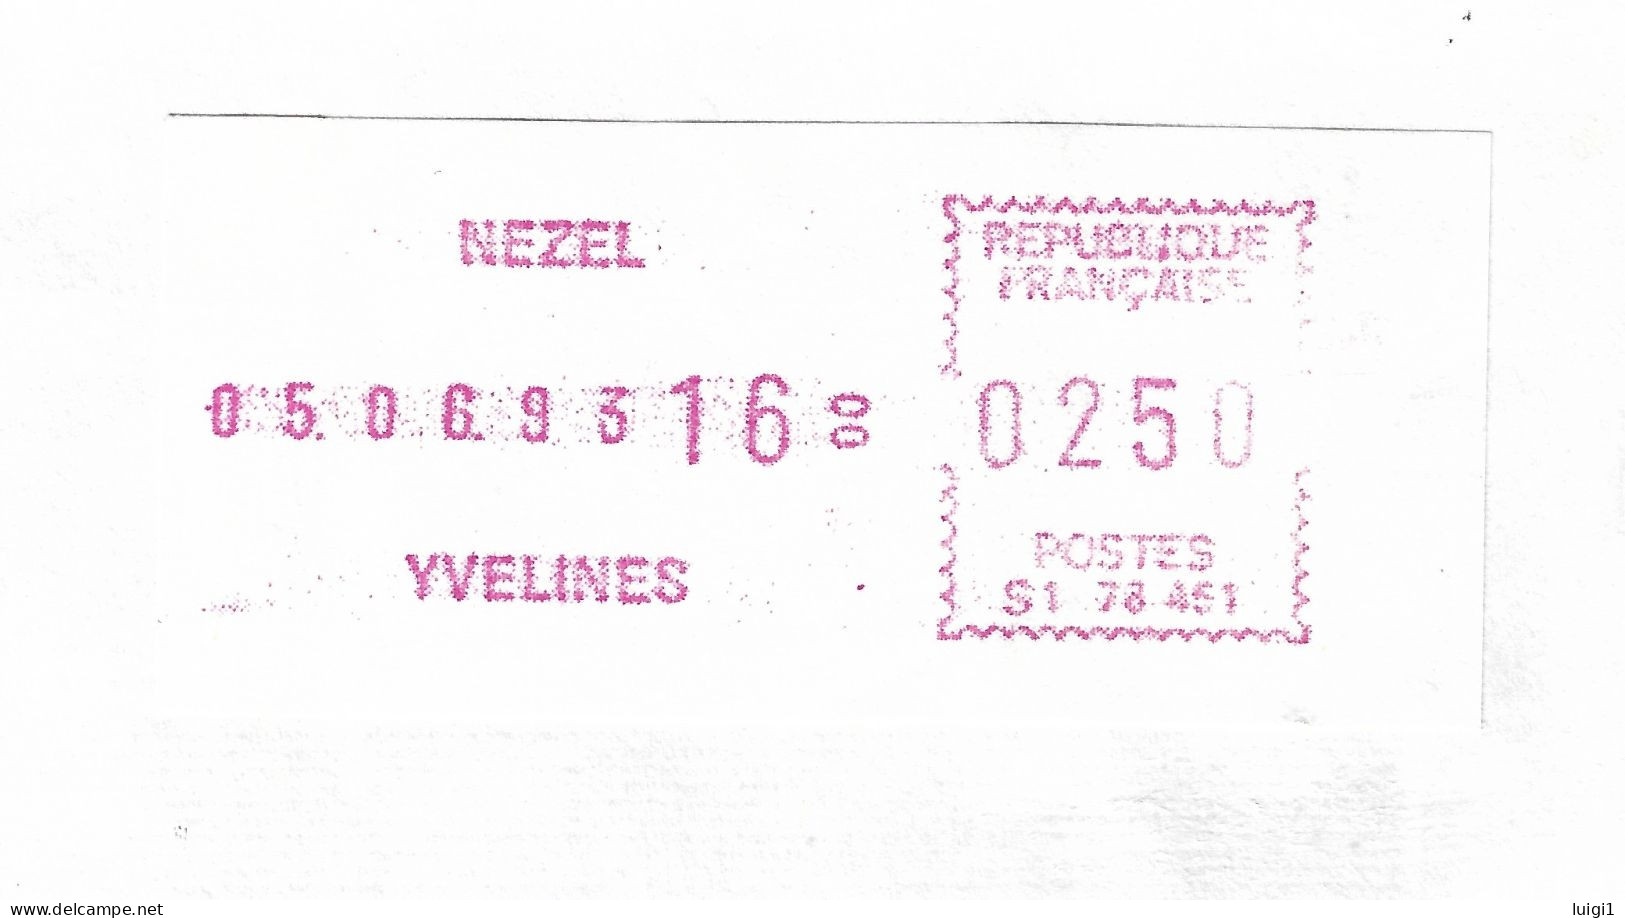 FRANCE 1993.Vignette D'Affranchissement De Guichet - SATAS Frama - 2,50 F. Bureau De NEZEL -YVELINES. TB. - 1969 Montgeron – Wit Papier – Frama/Satas